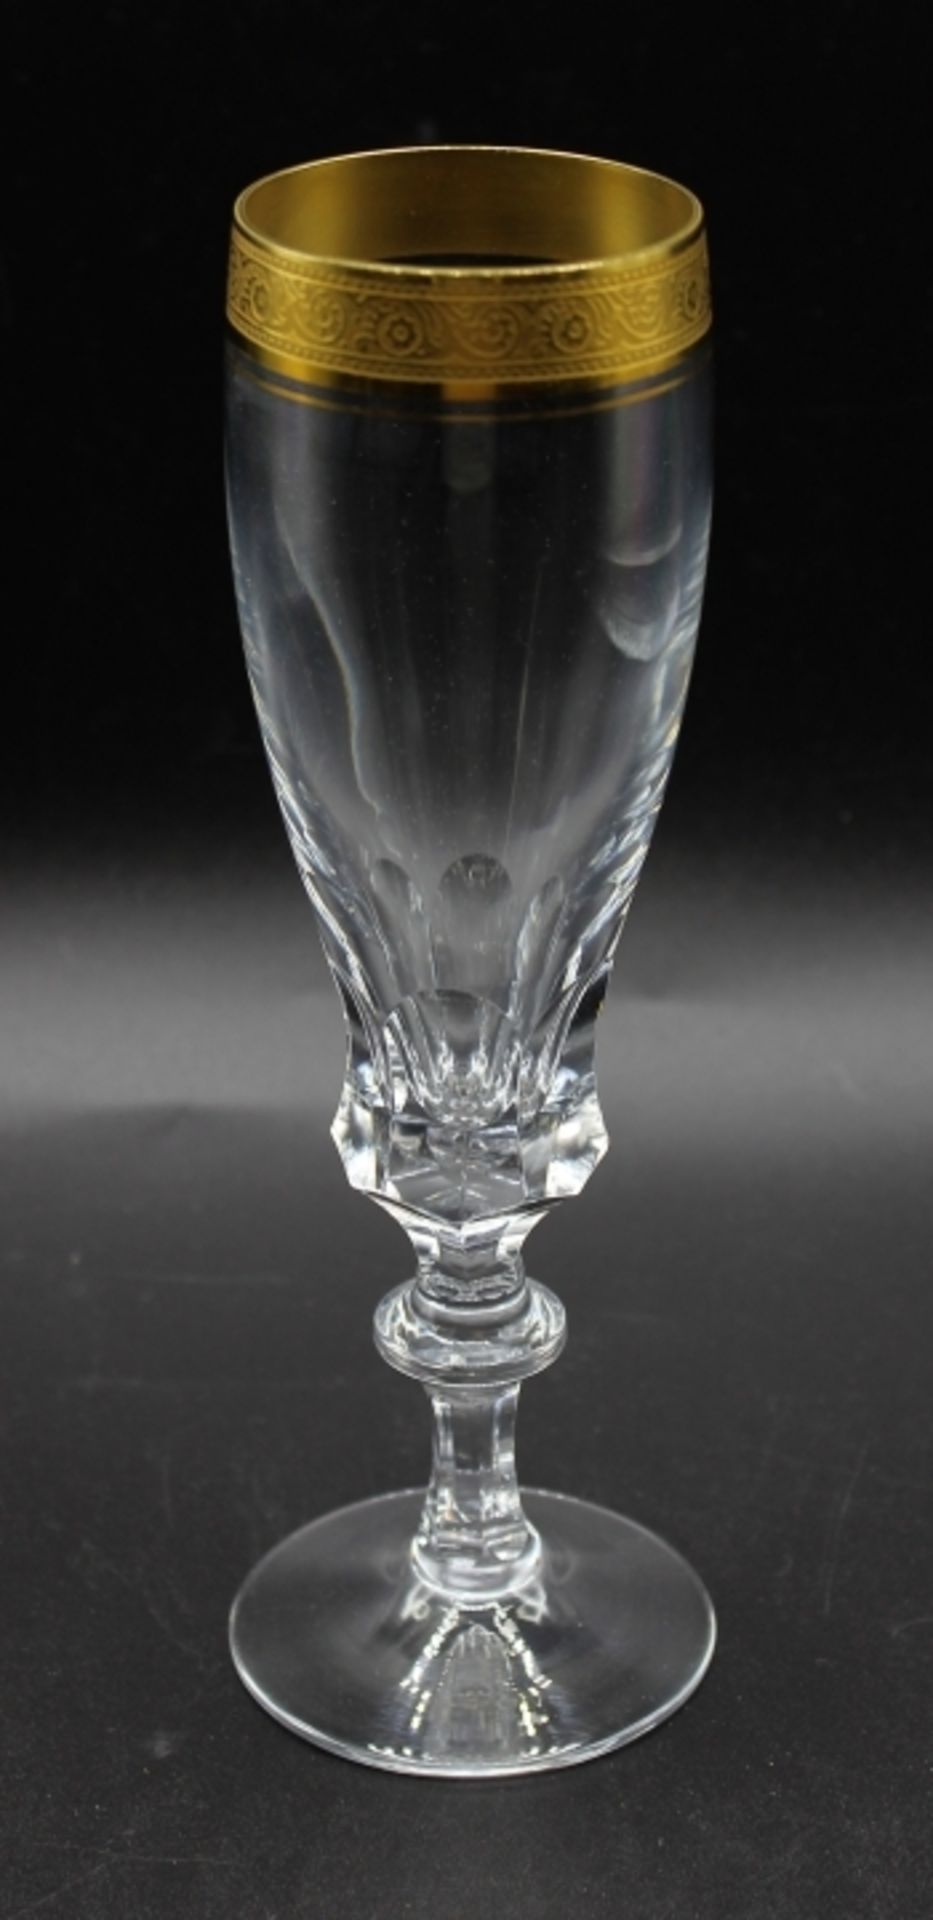 11 Sektgläser - Theresienthal Bernadotte Kristallglas mit breiter Goldätzkante, Höhe ca. 20 cm, kein